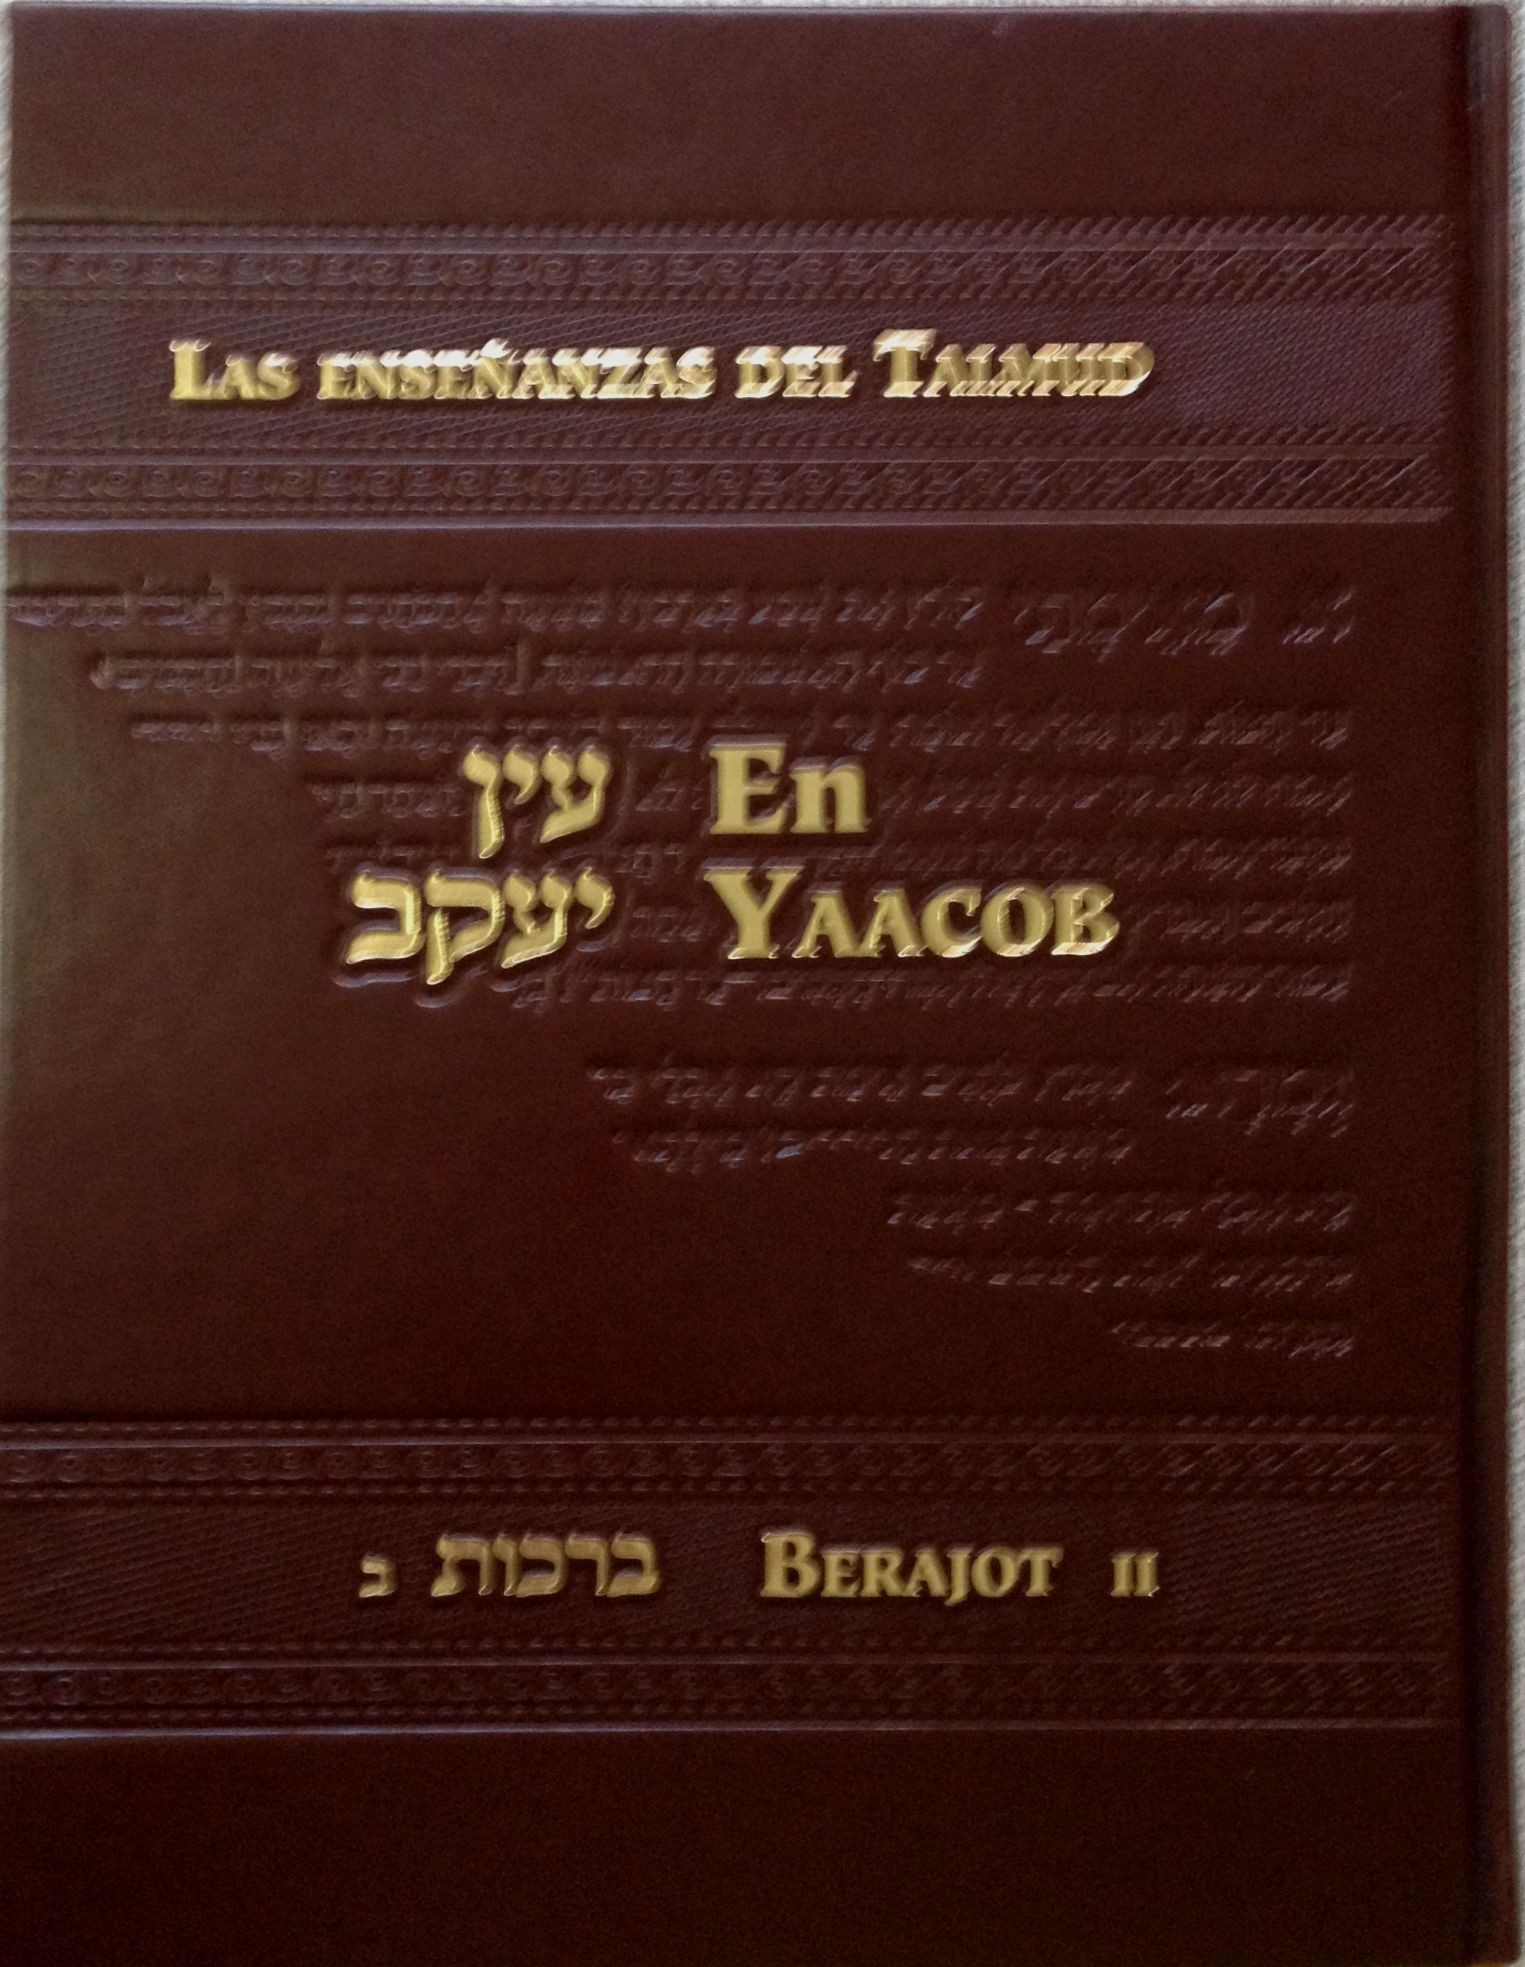 En Yaacob las enseñanzas del Talmud: Berajot II